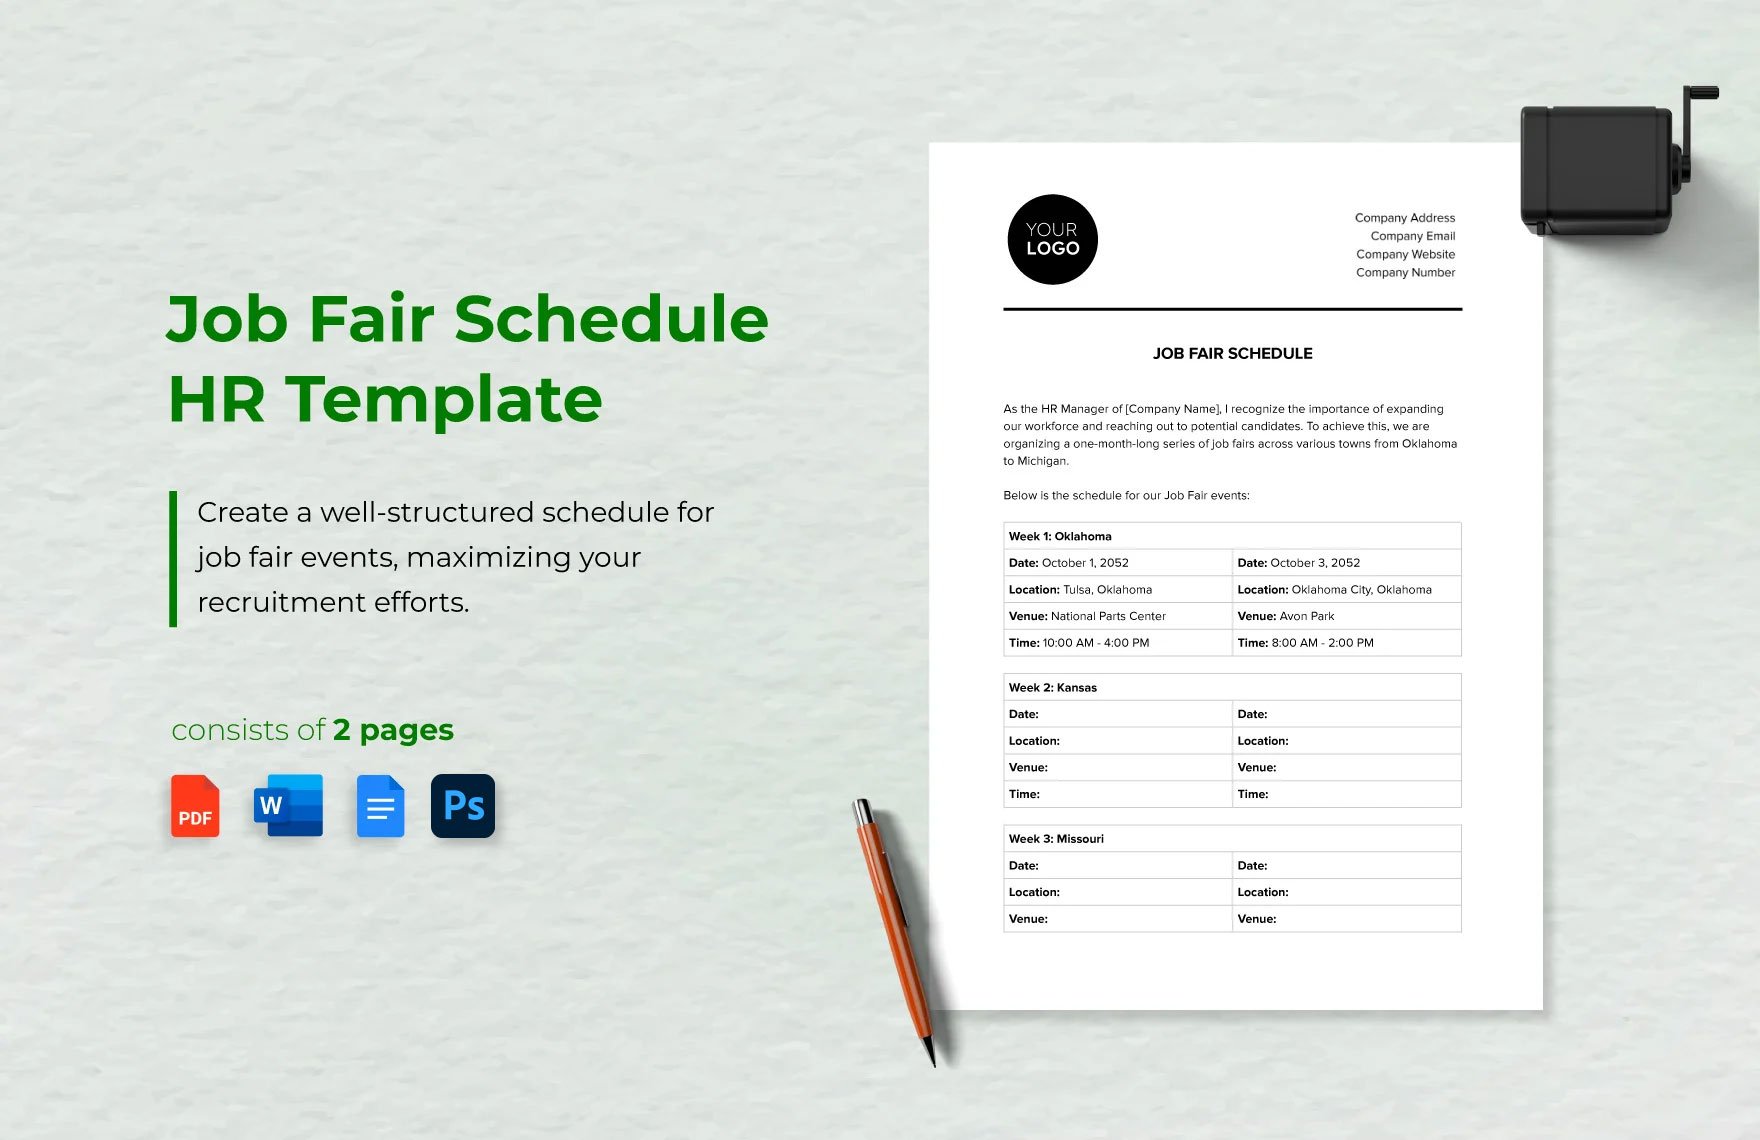 Job Fair Schedule HR Template